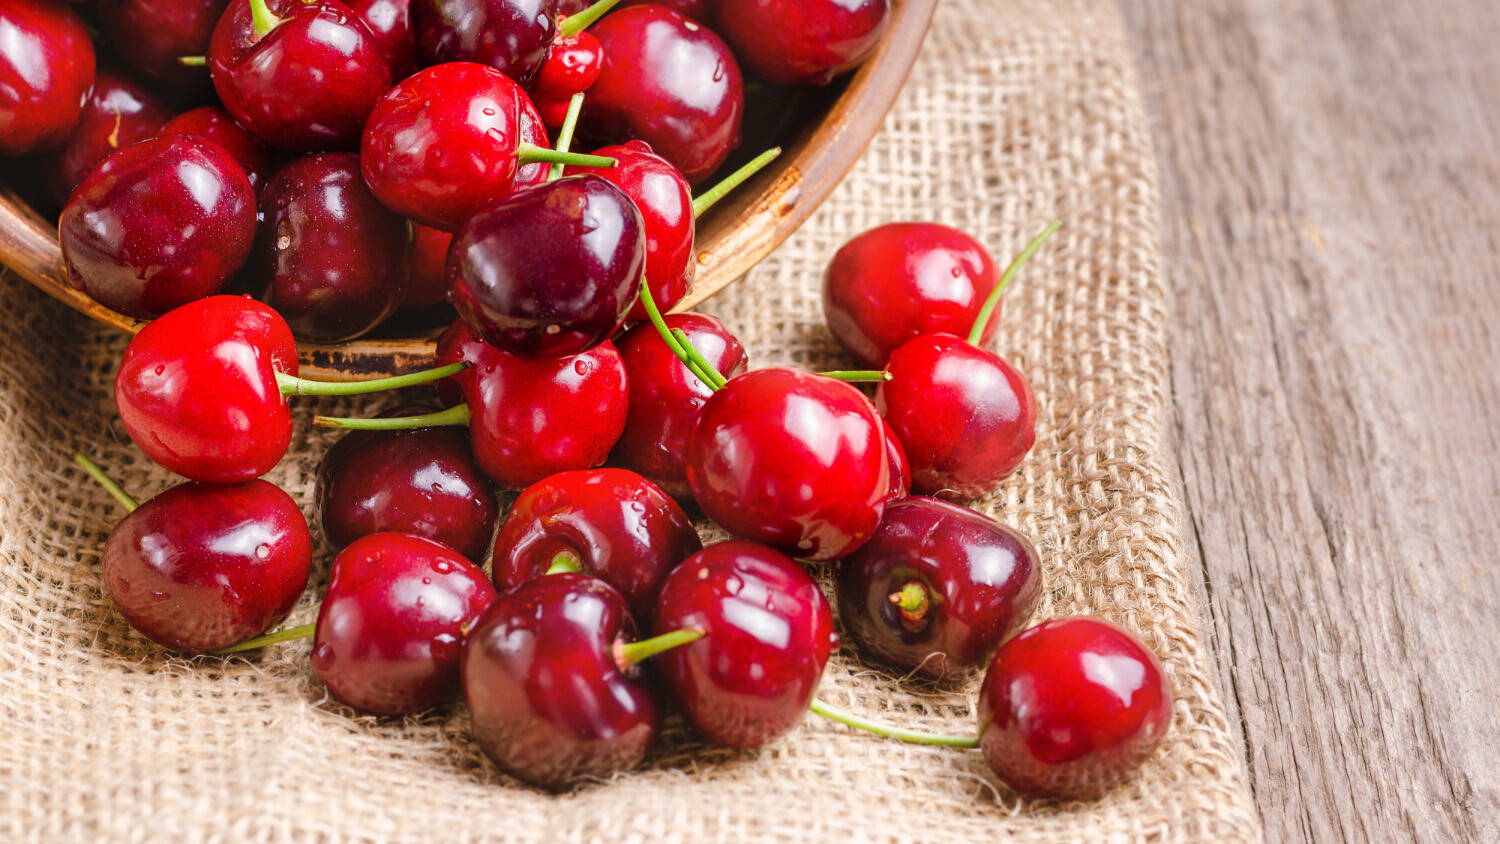 酸櫻桃 是歐美家庭常用於改善 痛風 或 尿酸 的 保健 水果